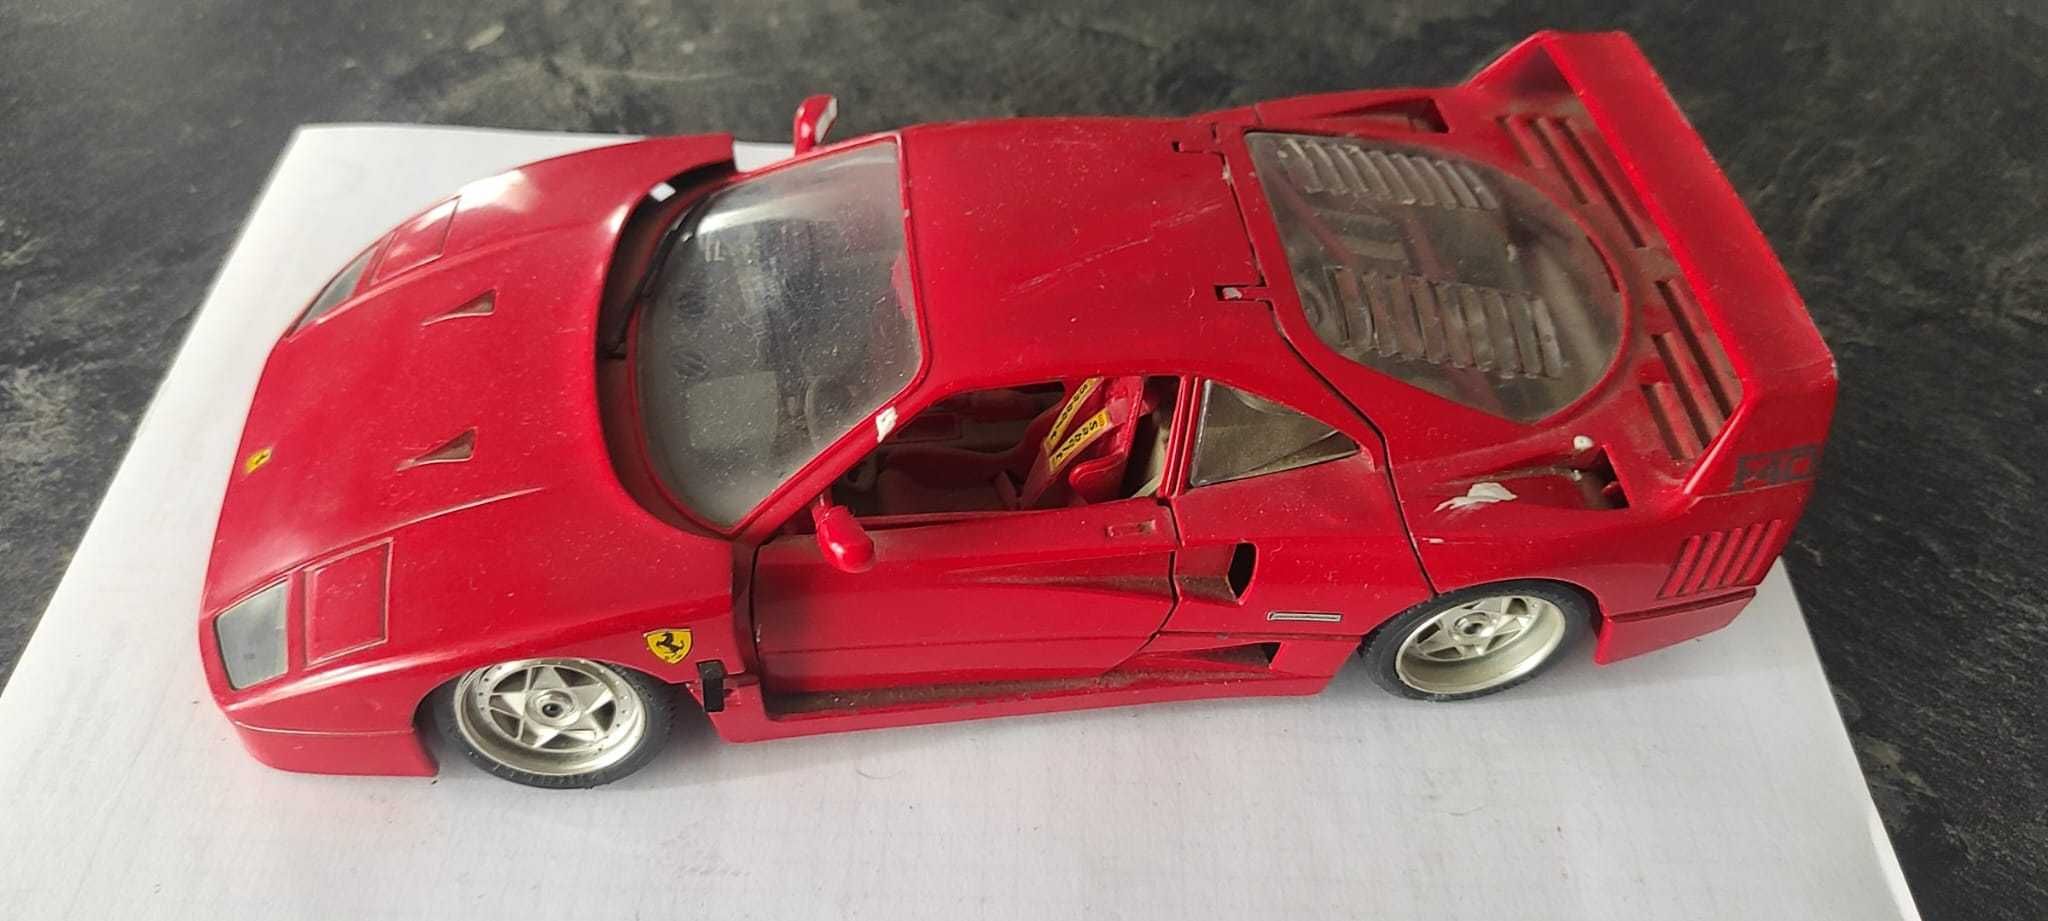 Mașinuță Ferrari F40 1987 colectie Pret Fix fara pierdere de timp.